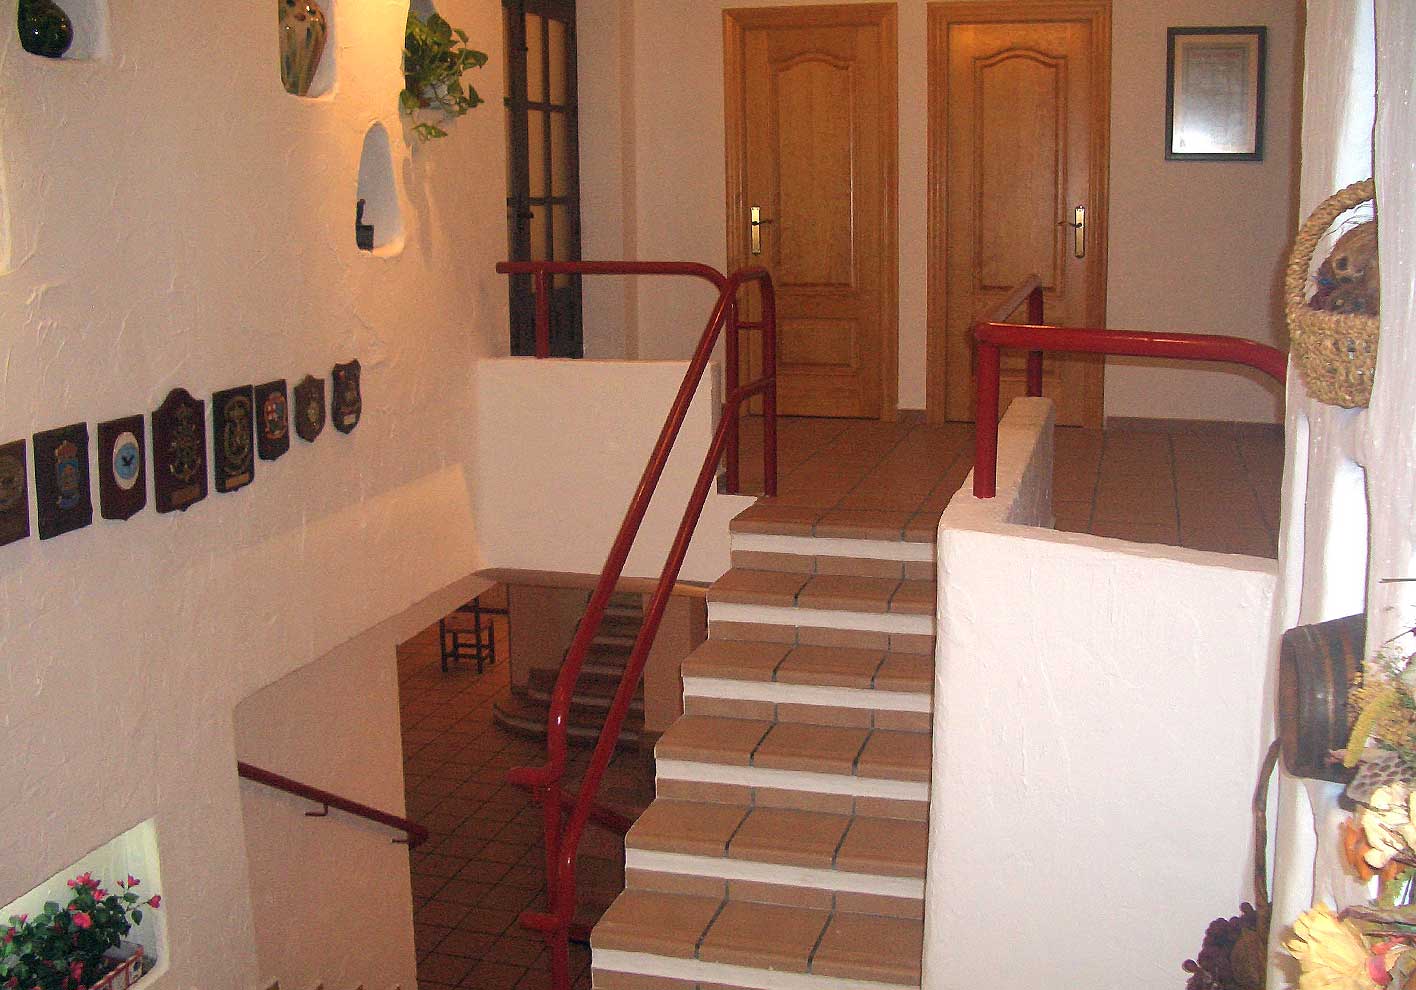 Private Dining Room - Hotel Restaurante Terraza Carmona in Vera, Almeria